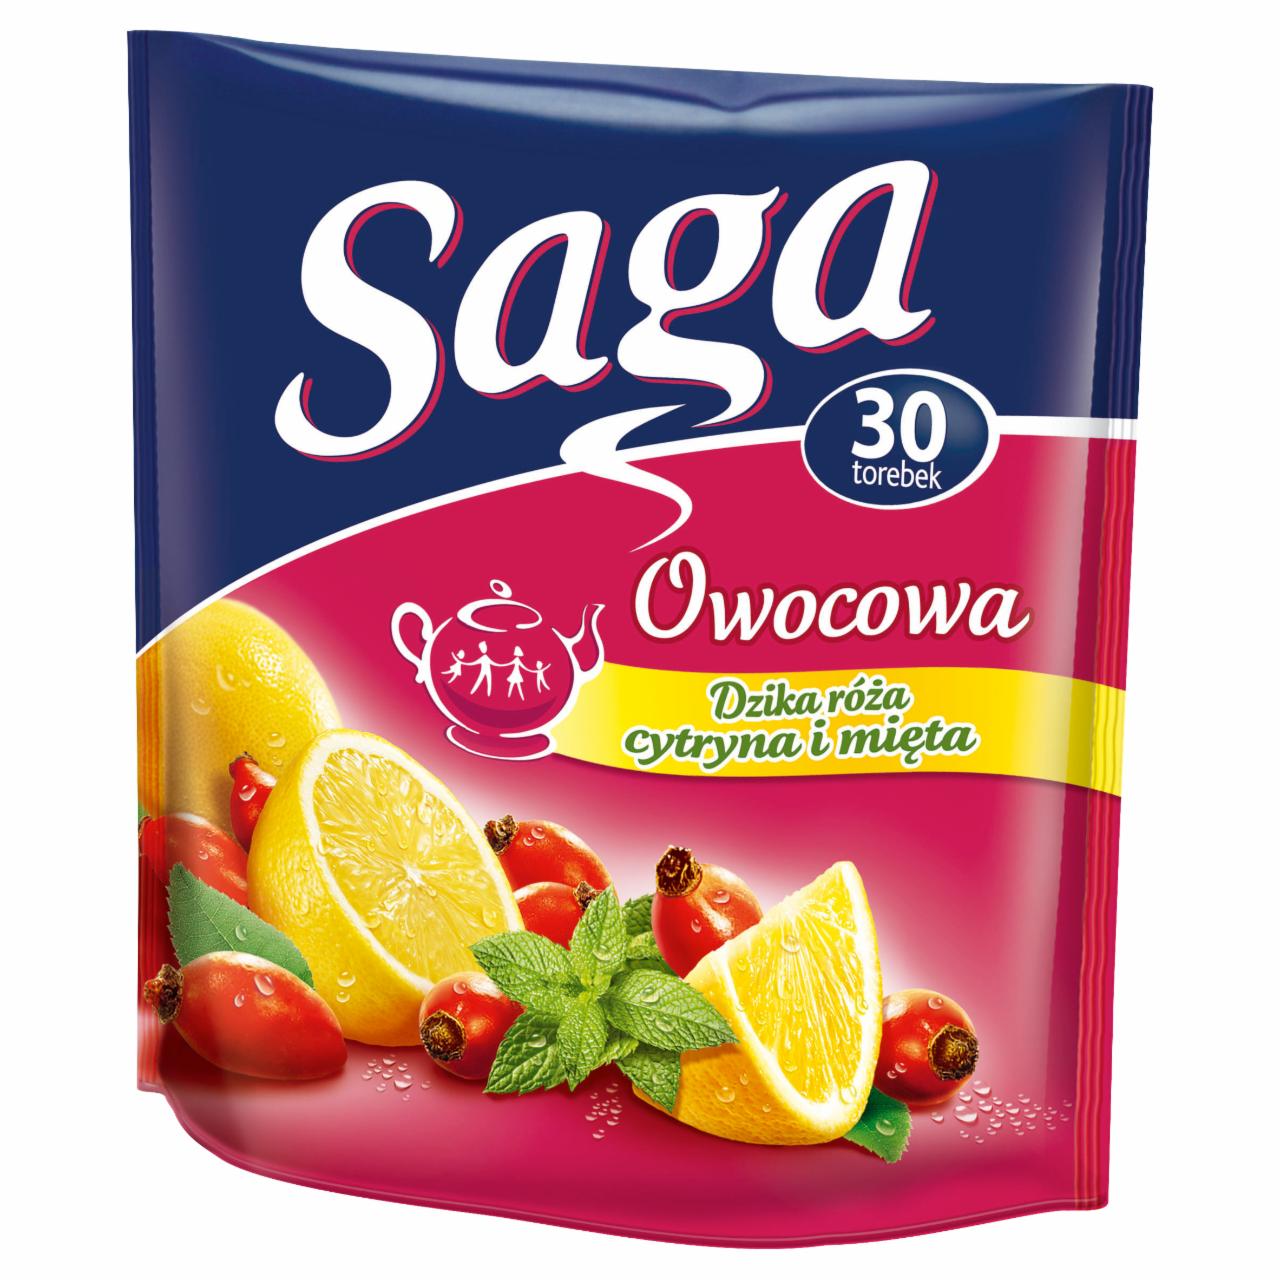 Zdjęcia - Saga Owocowa dzika róża cytryna i mięta Herbatka 60 g (30 torebek)